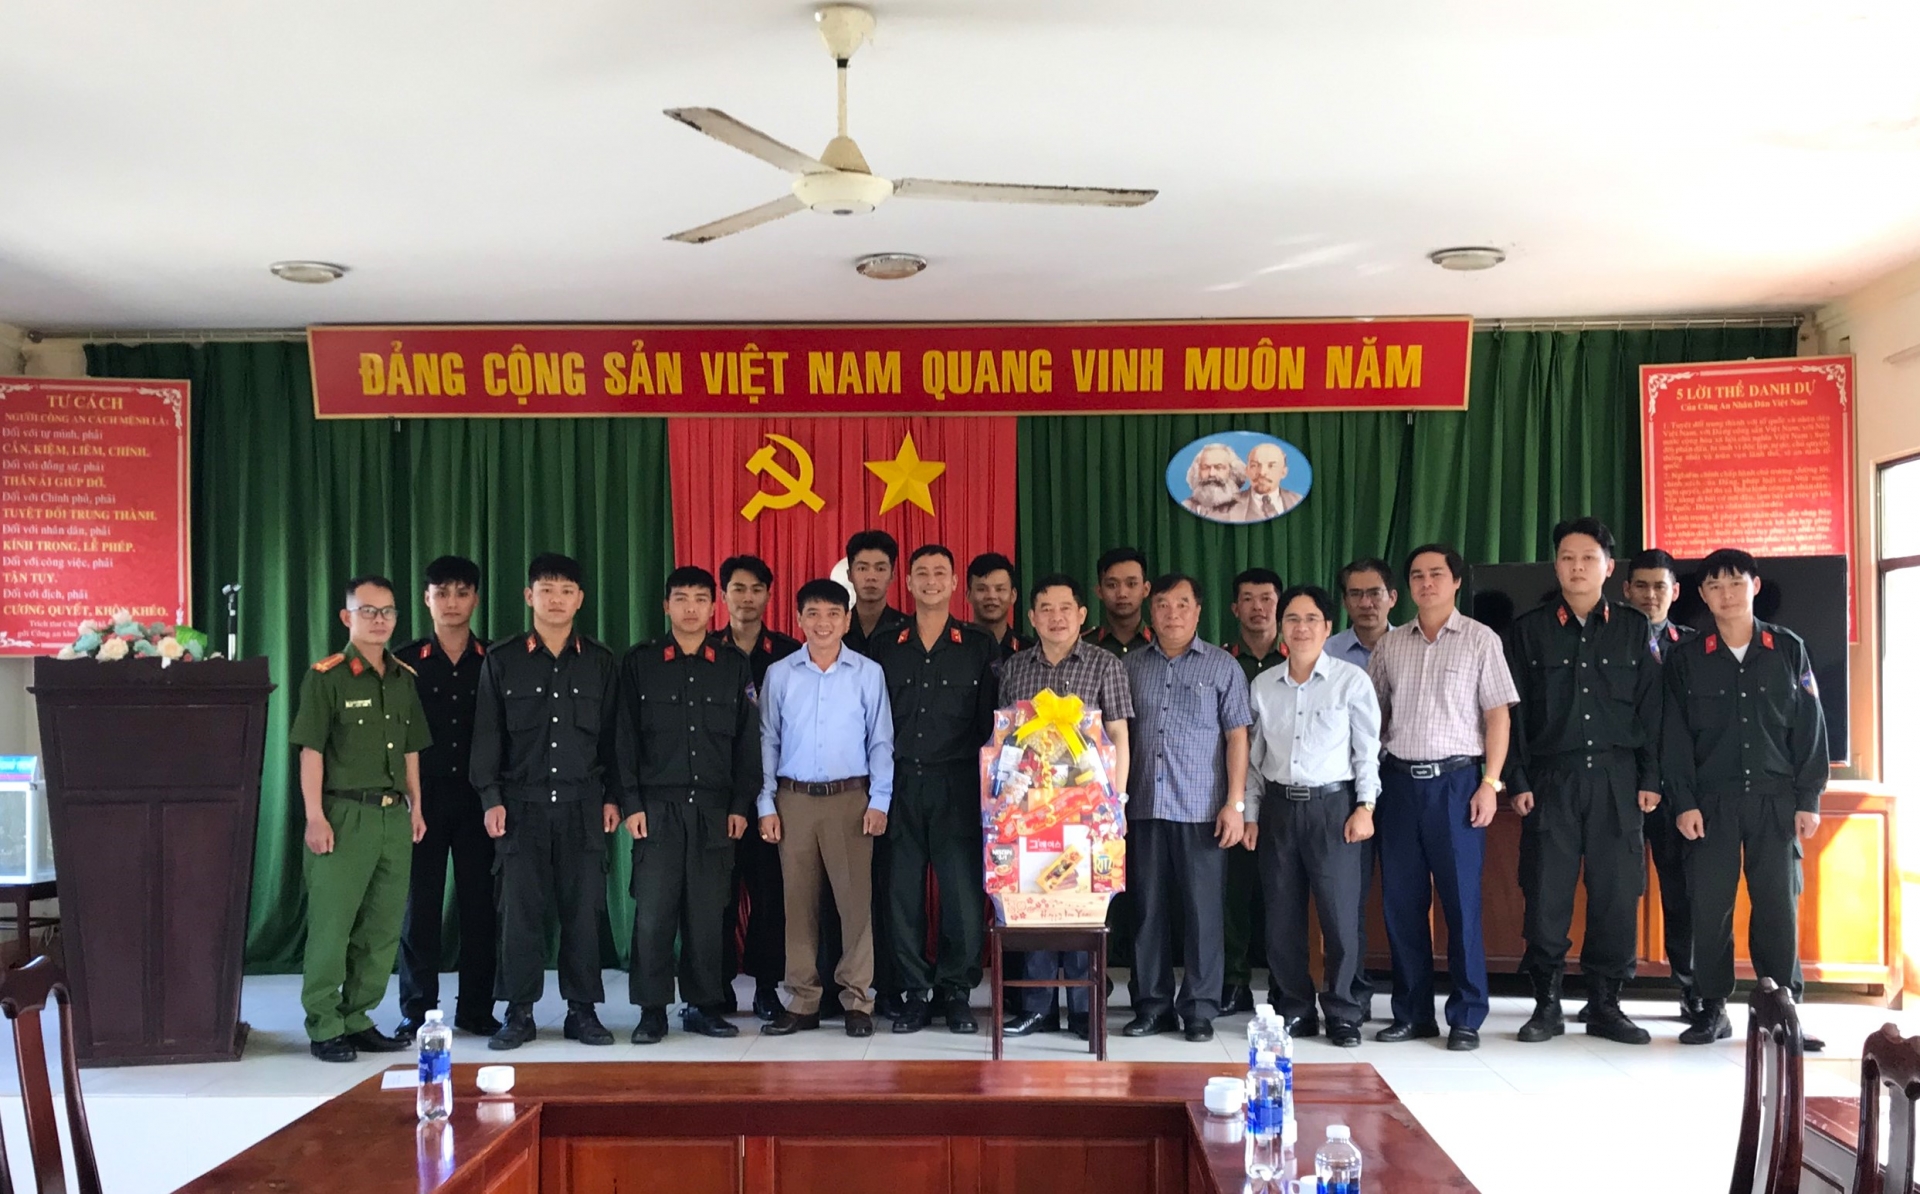 Chủ tịch UBND TP Bảo Lộc Nguyễn Văn Phương thăm, tặng quà chúc tết cán bộ, chiến sĩ Trung đoàn Cảnh sát Cơ động